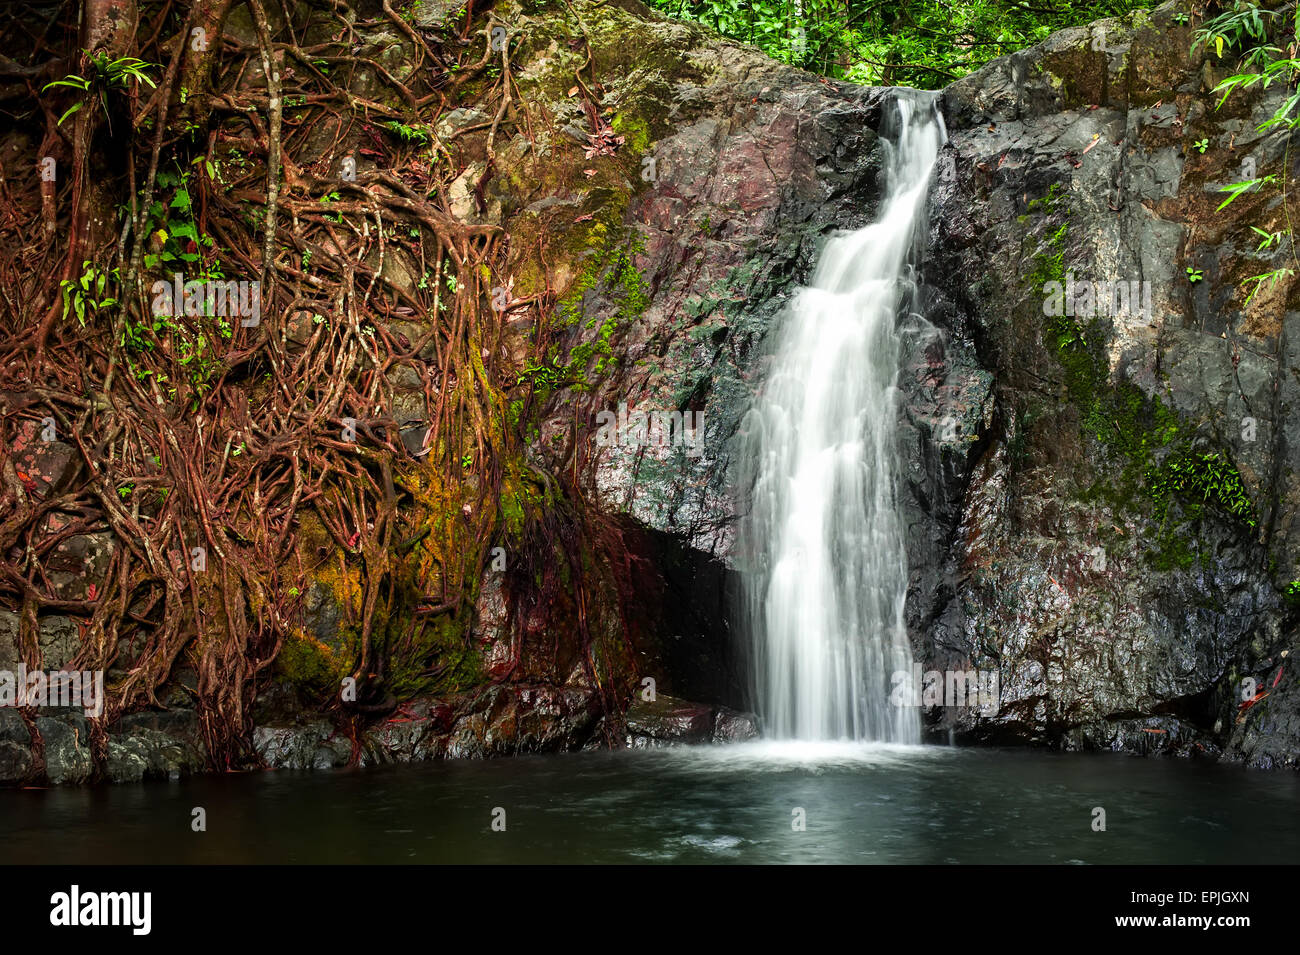 Foresta pluviale tropicale paesaggio con la giungla di piante e acqua corrente di una piccola cascata. Vang Vieng, Laos Foto Stock